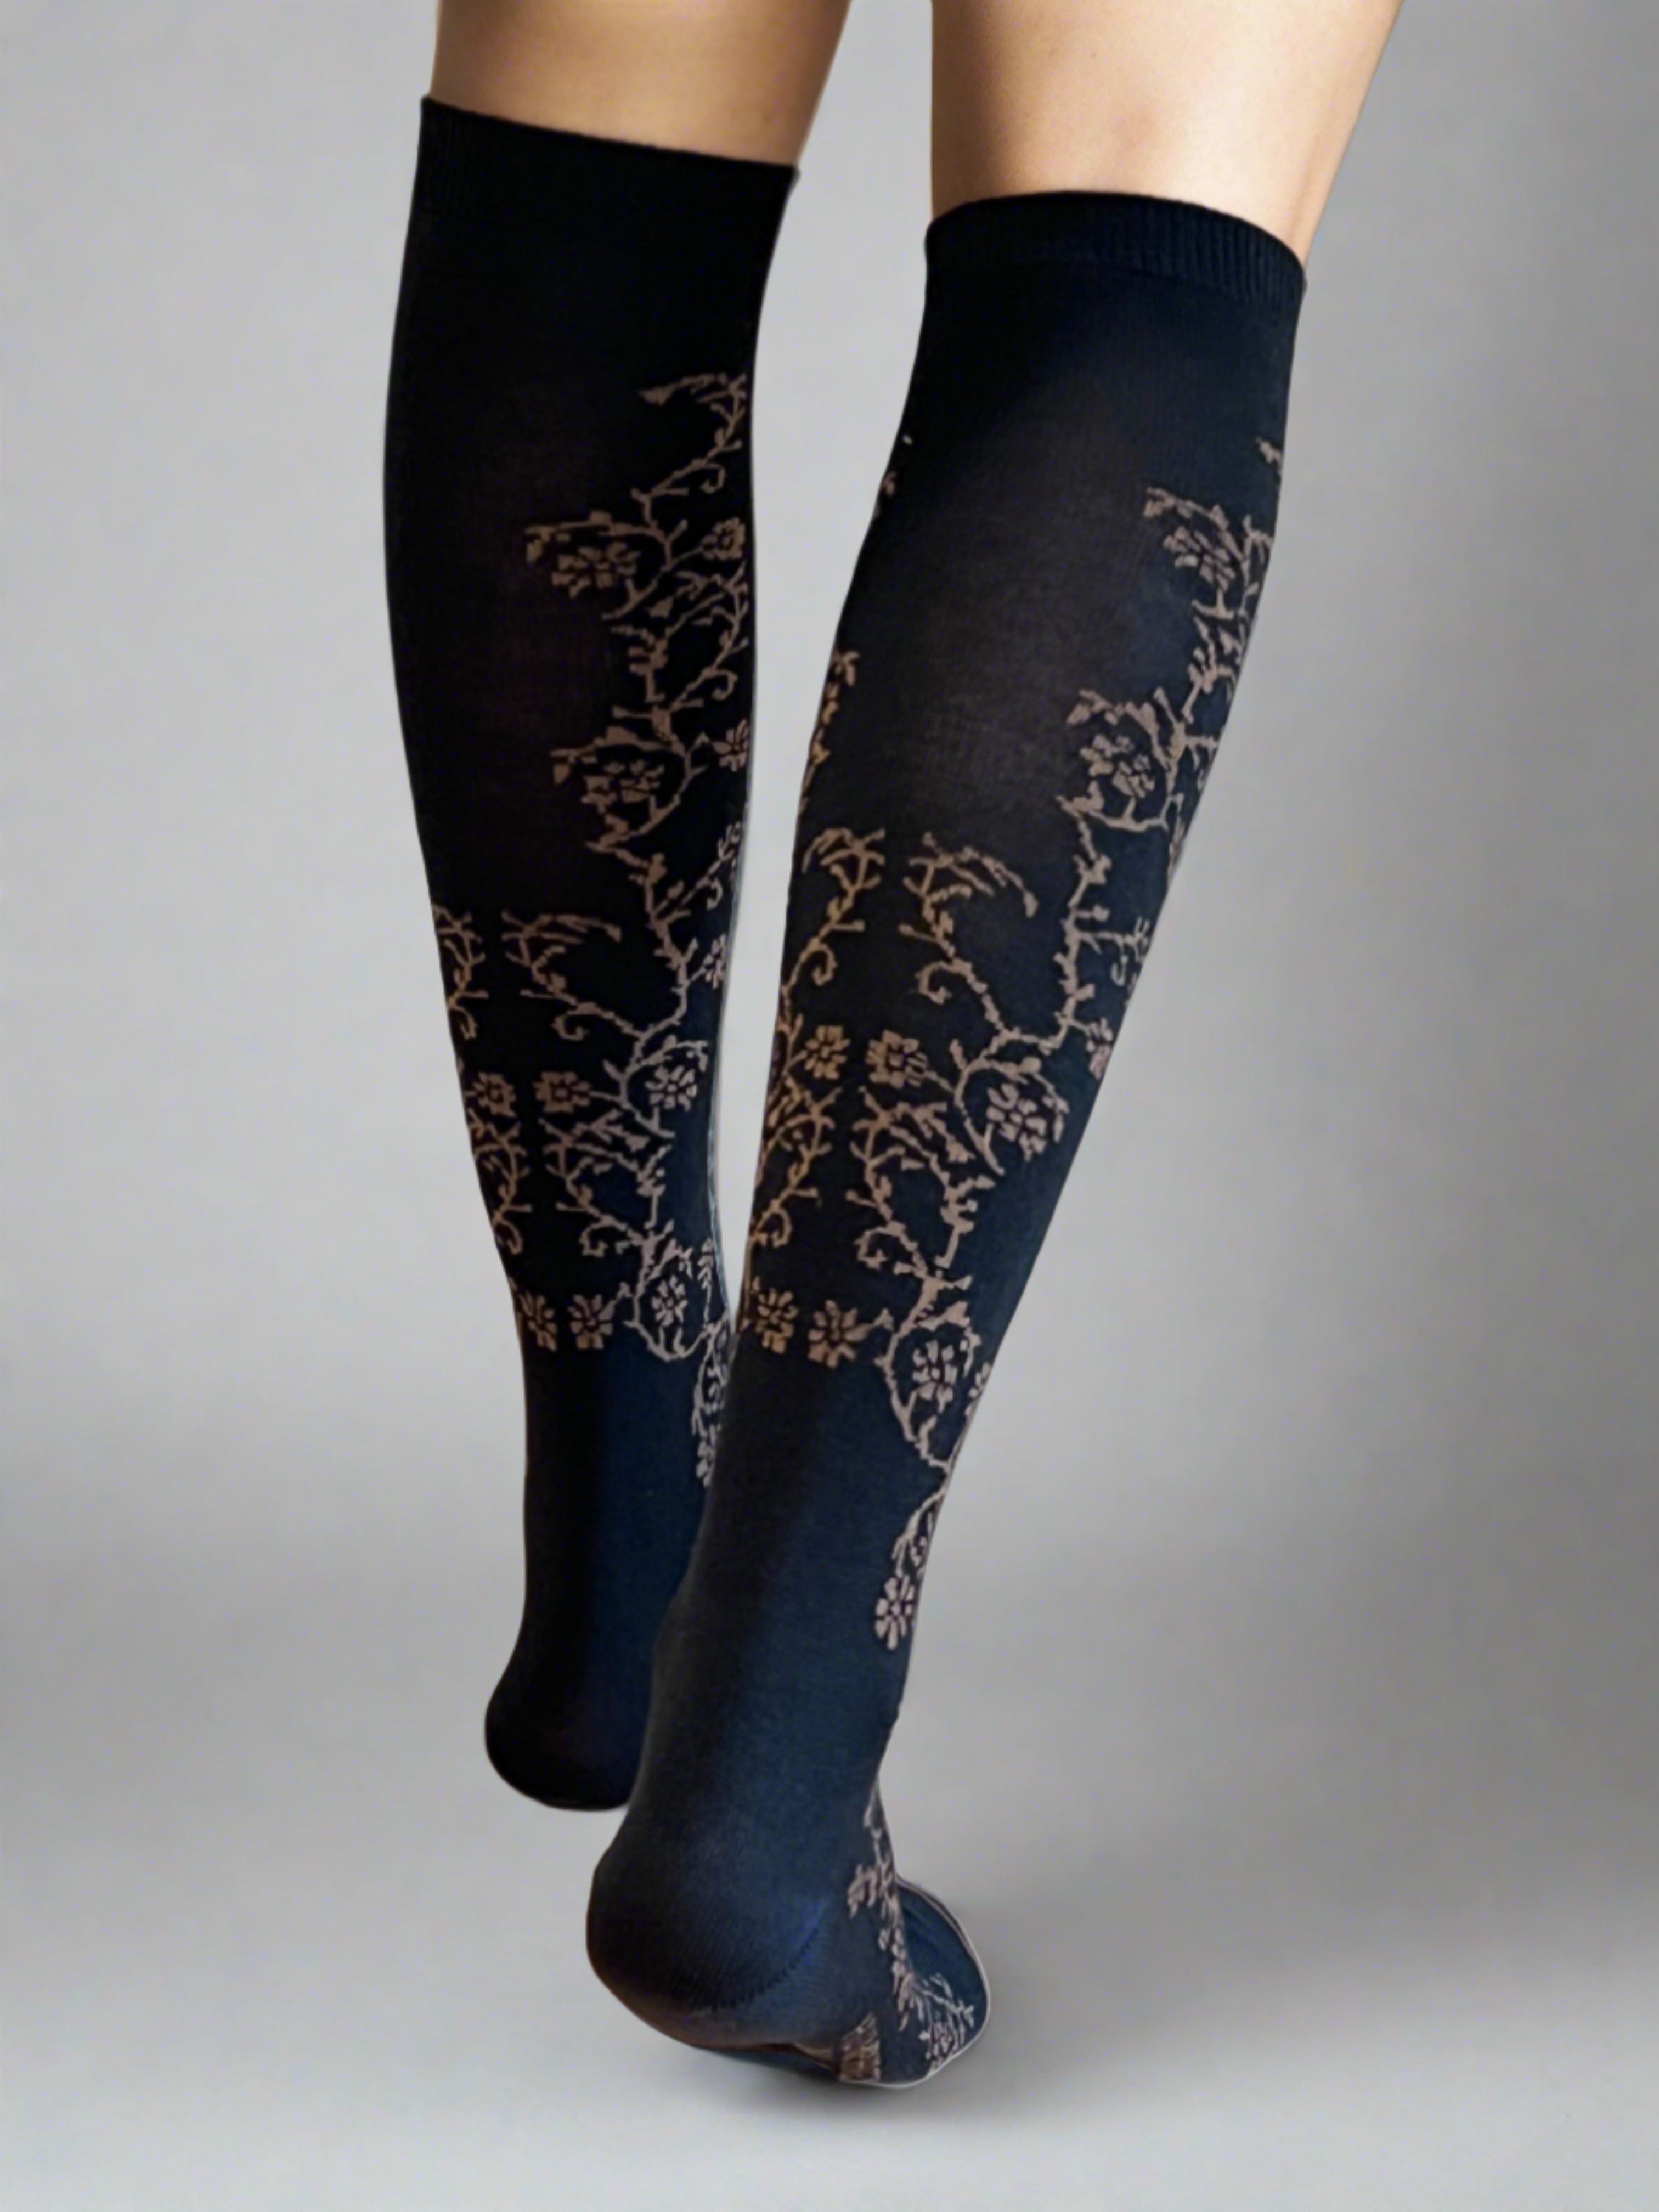 Jasmine Vine Black Merino Wool Women's Knee High Socks - Aussie Made